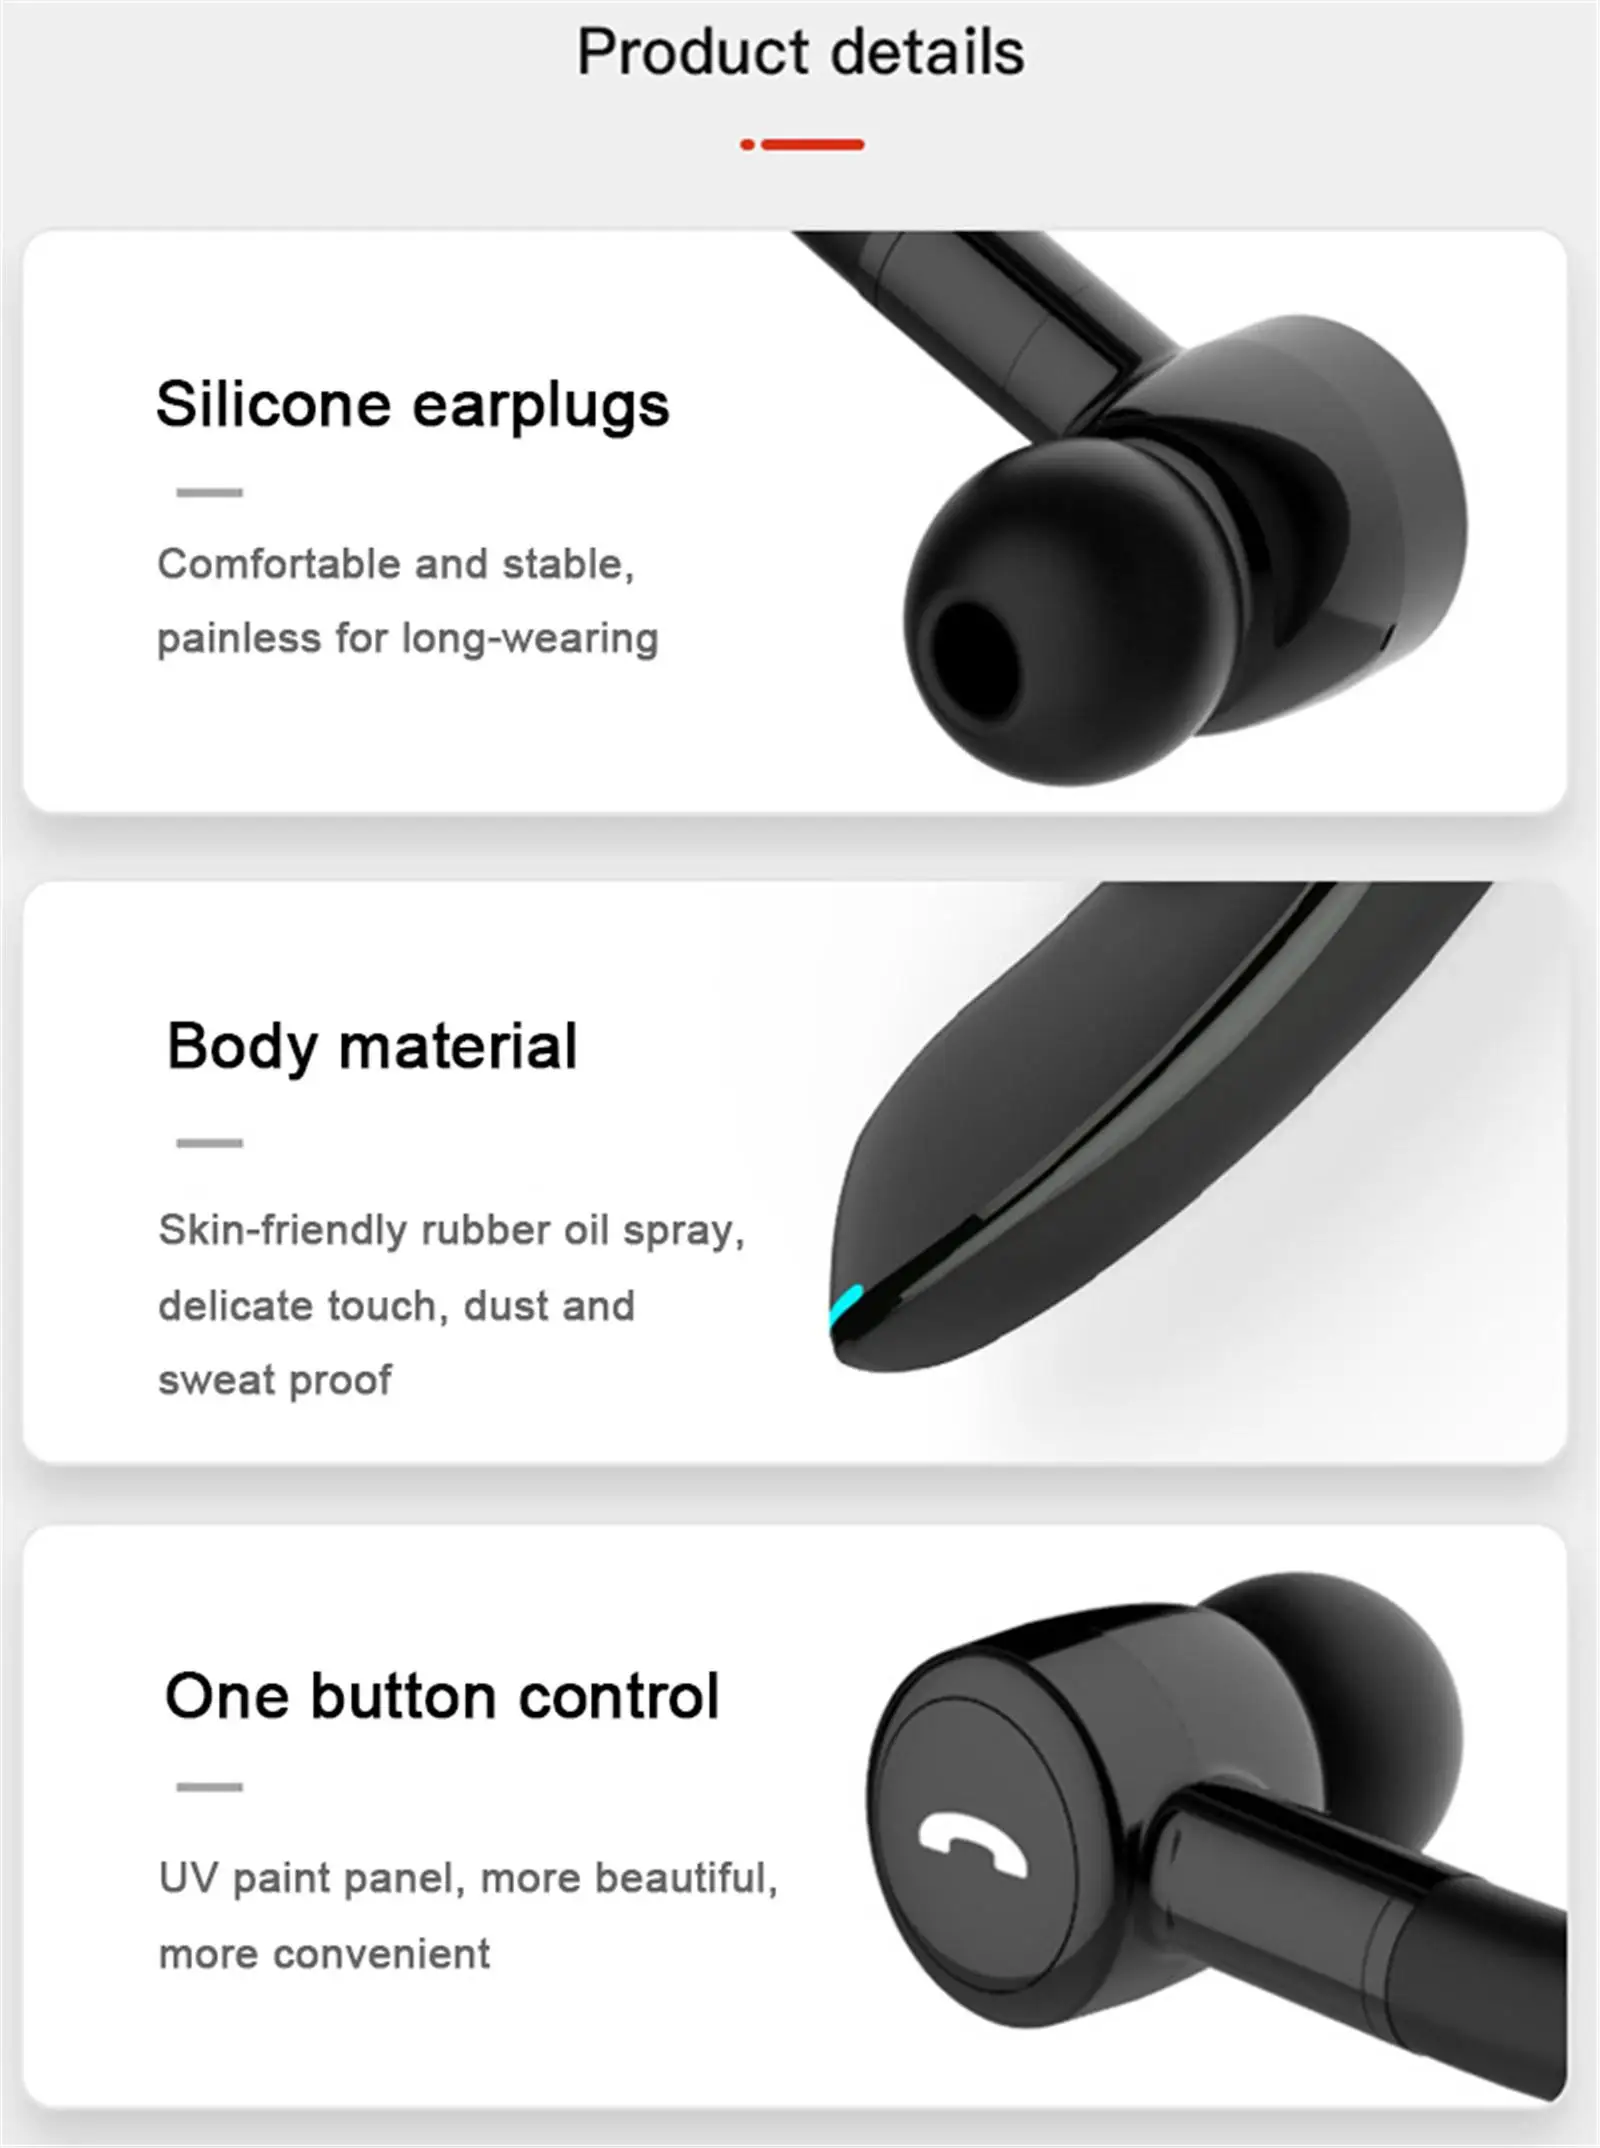 Trådløse Hovedtelefoner Til En Bluetooth-V5.0 Stereo Hovedtelefoner støjreducerende Øretelefoner til Apple iPhone Samsung Galaxy S9 S8 Huawei LG